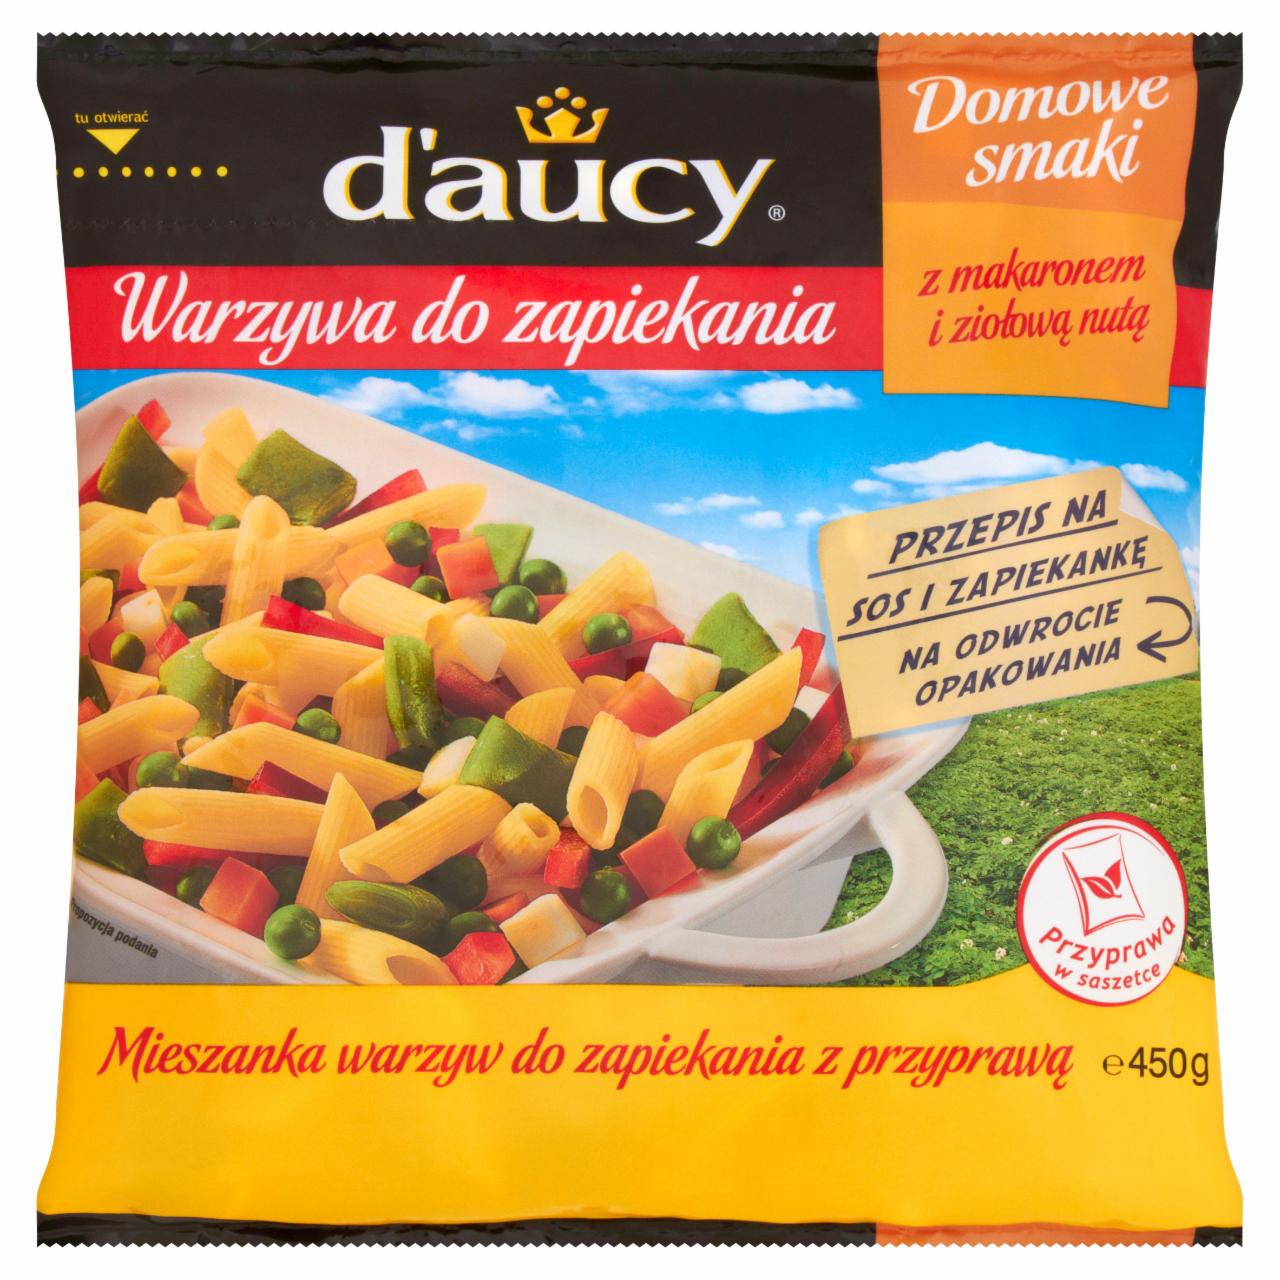 Zdjęcia - d'aucy Domowe smaki Warzywa do zapiekania z makaronem i ziołową nutą 450 g